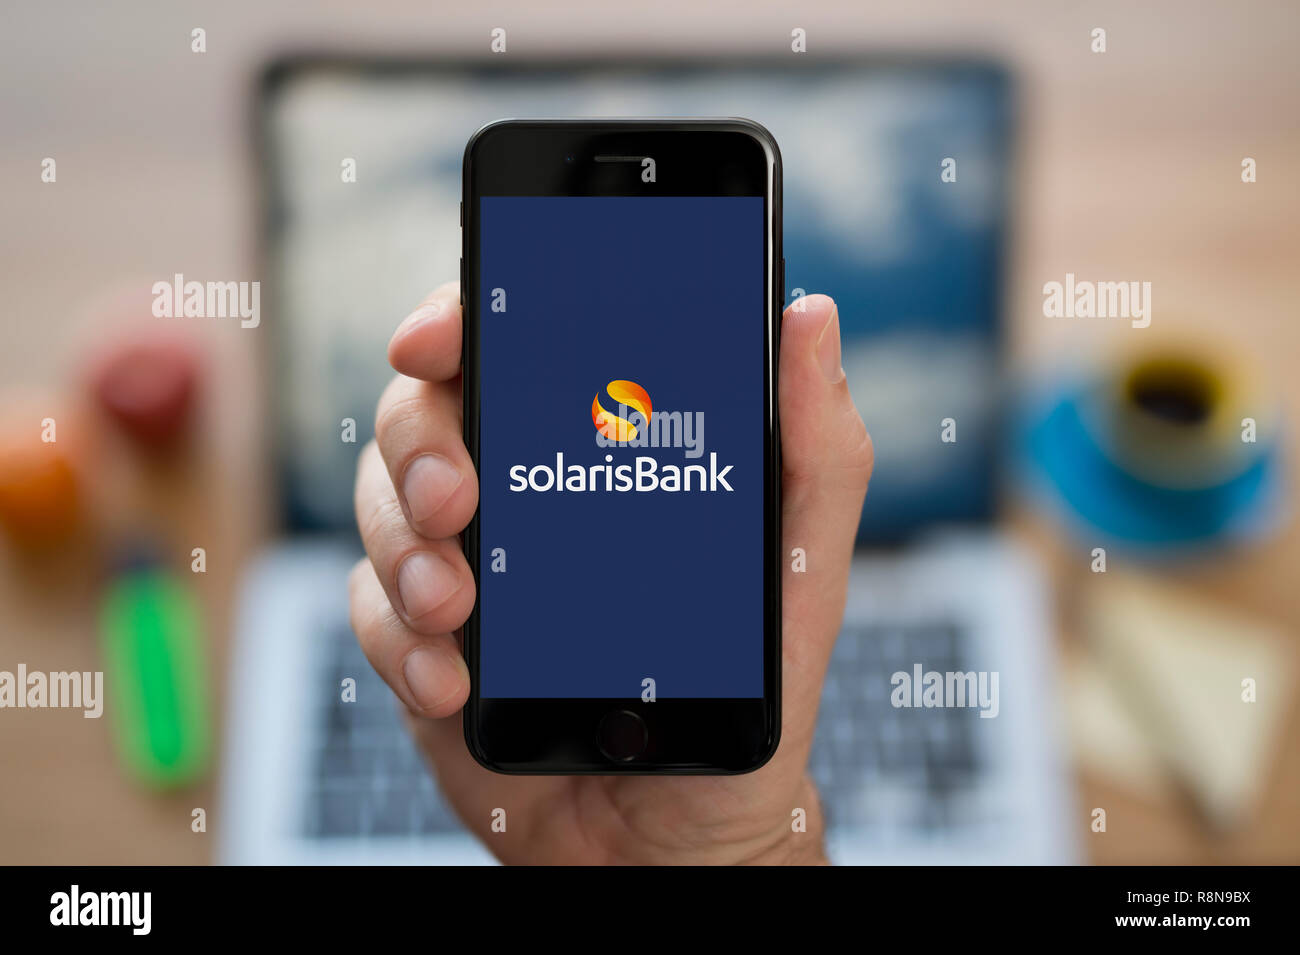 Ein Mann schaut auf seinem iPhone die zeigt die Solaris Bank Logo (nur redaktionelle Nutzung). Stockfoto